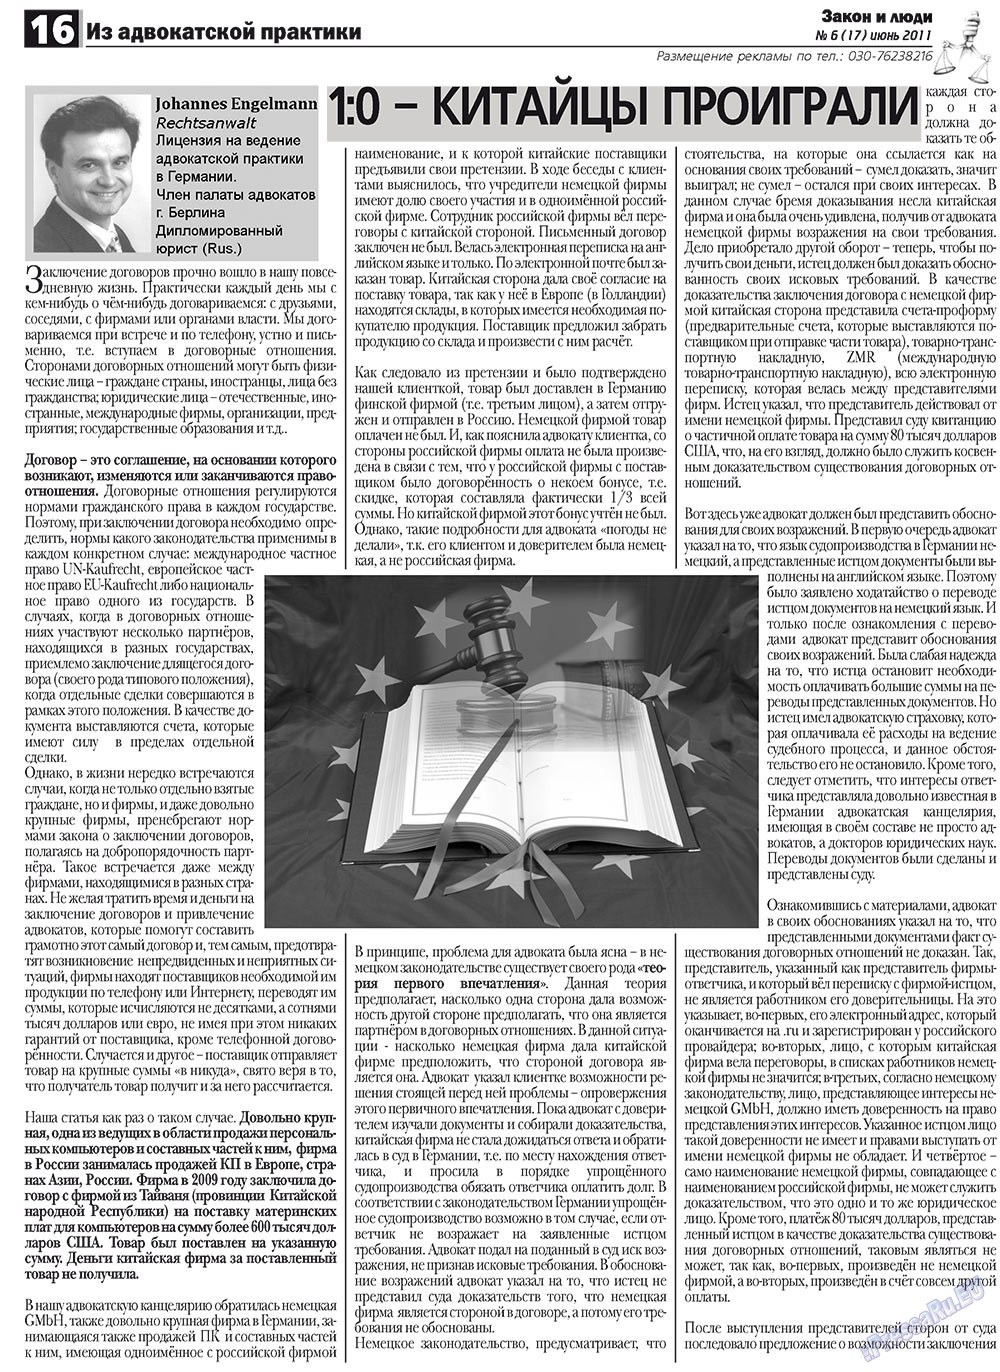 Закон и люди (газета). 2011 год, номер 6, стр. 16